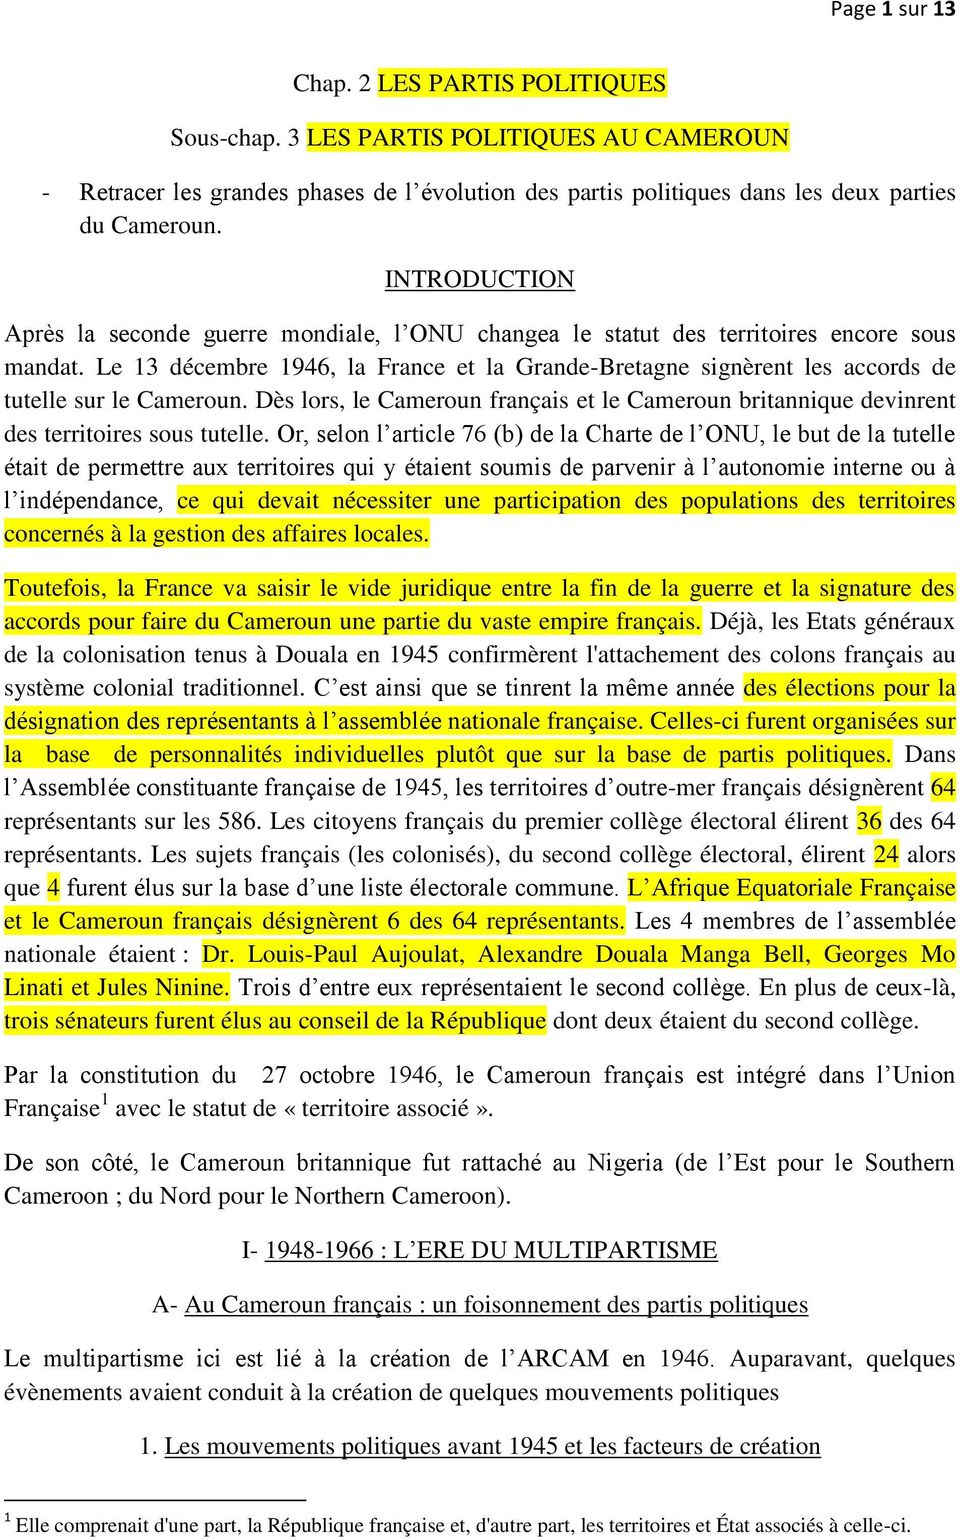 Le 13 décembre 1946, la France et la Grande-Bretagne signèrent les accords de tutelle sur le Cameroun. Dès lors, le Cameroun français et le Cameroun britannique devinrent des territoires sous tutelle.